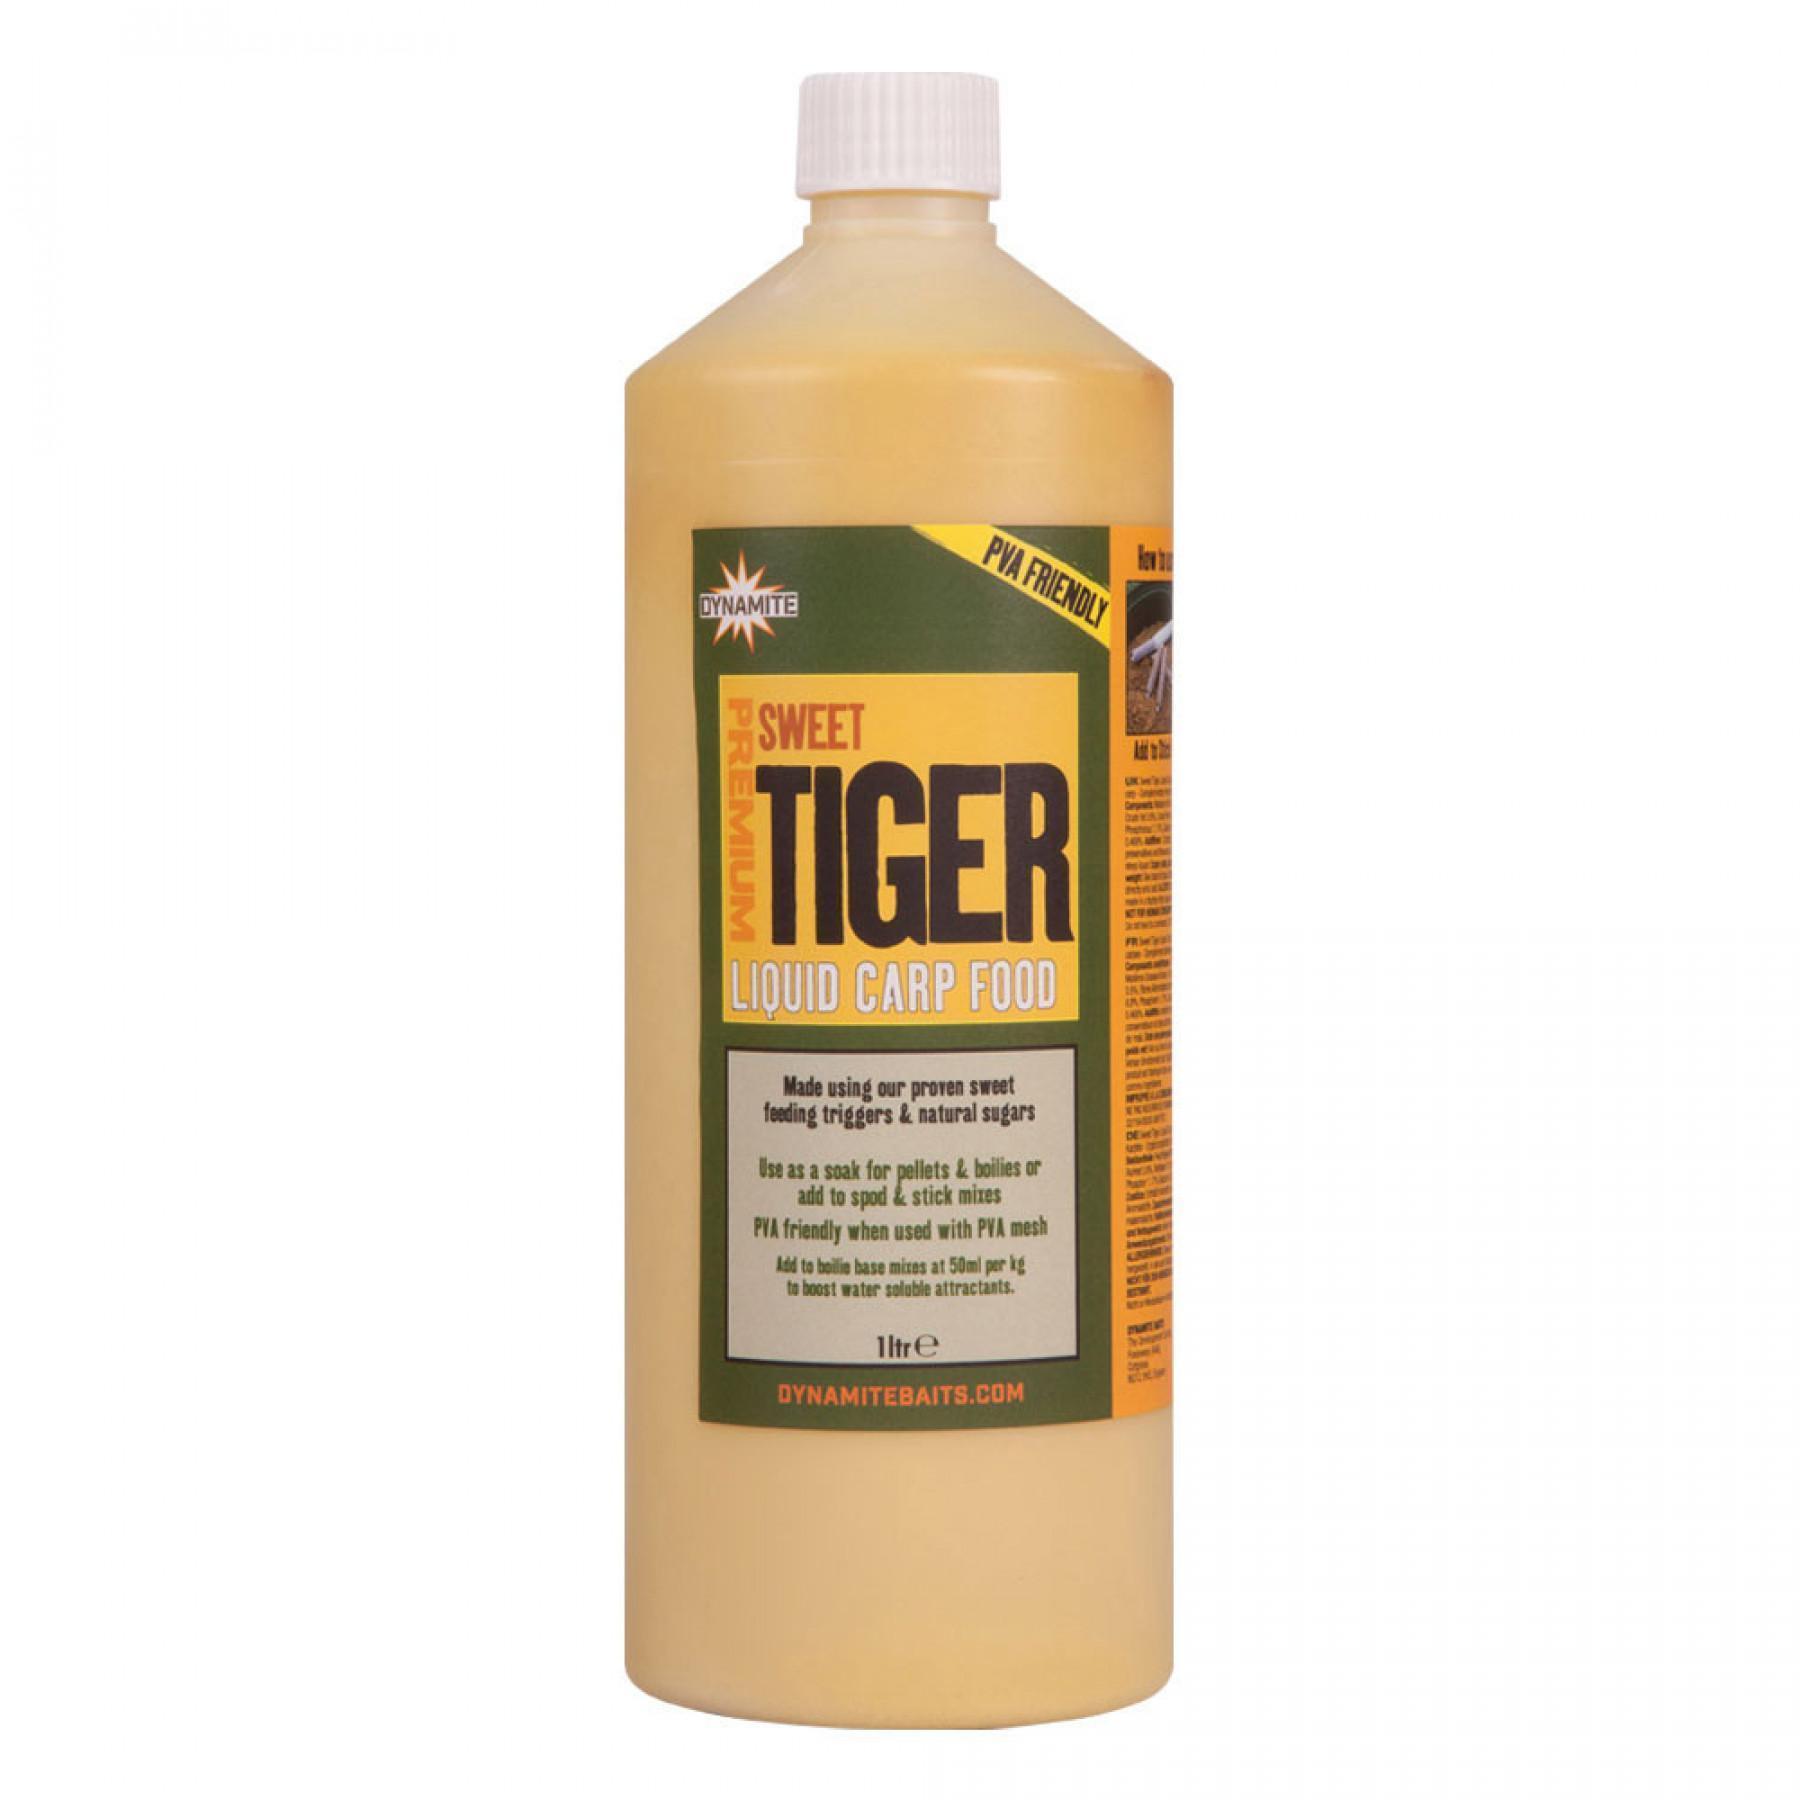 Karperbooster dynamite baits sweet tiger liquid carp food 1 litre